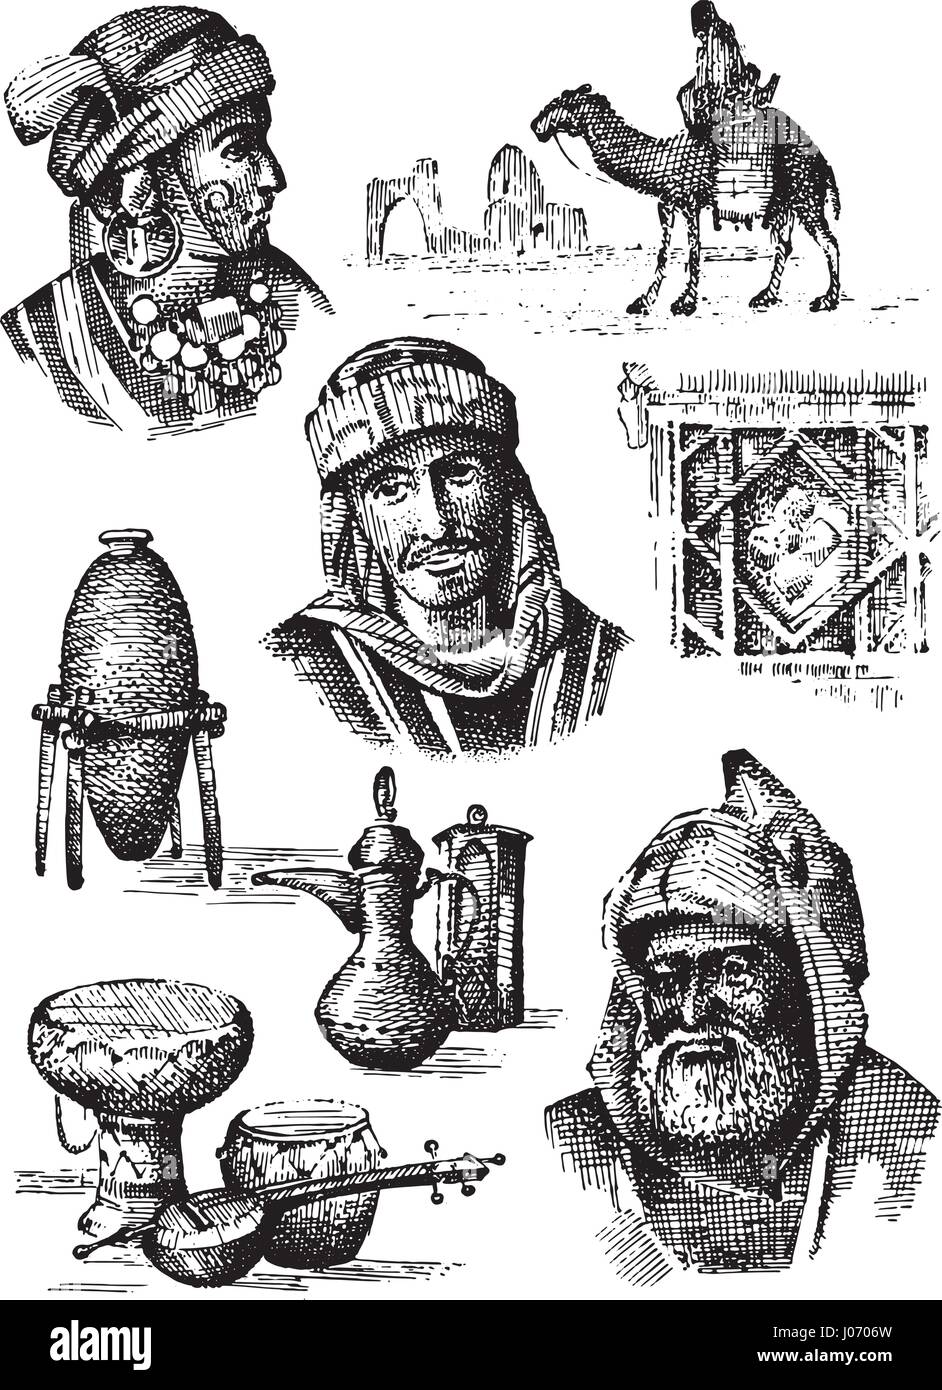 Orientare la raccolta, MEDIO ORIENTE - disegnata a mano serie di vasi, piatti e cammello arabo uomini e donne volti, egraved illustrazione Illustrazione Vettoriale